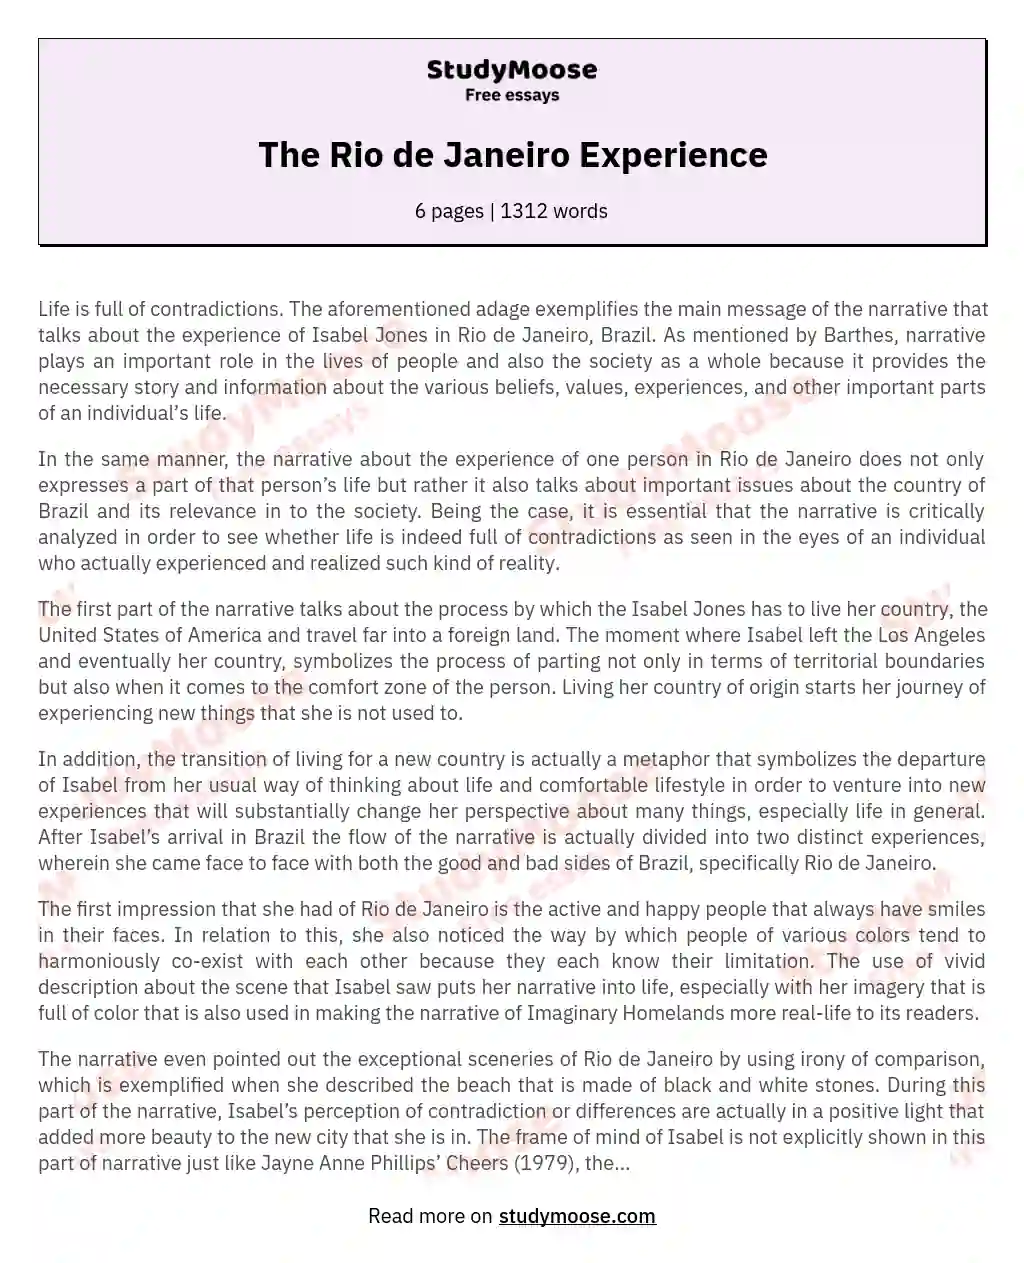 The Rio de Janeiro Experience essay